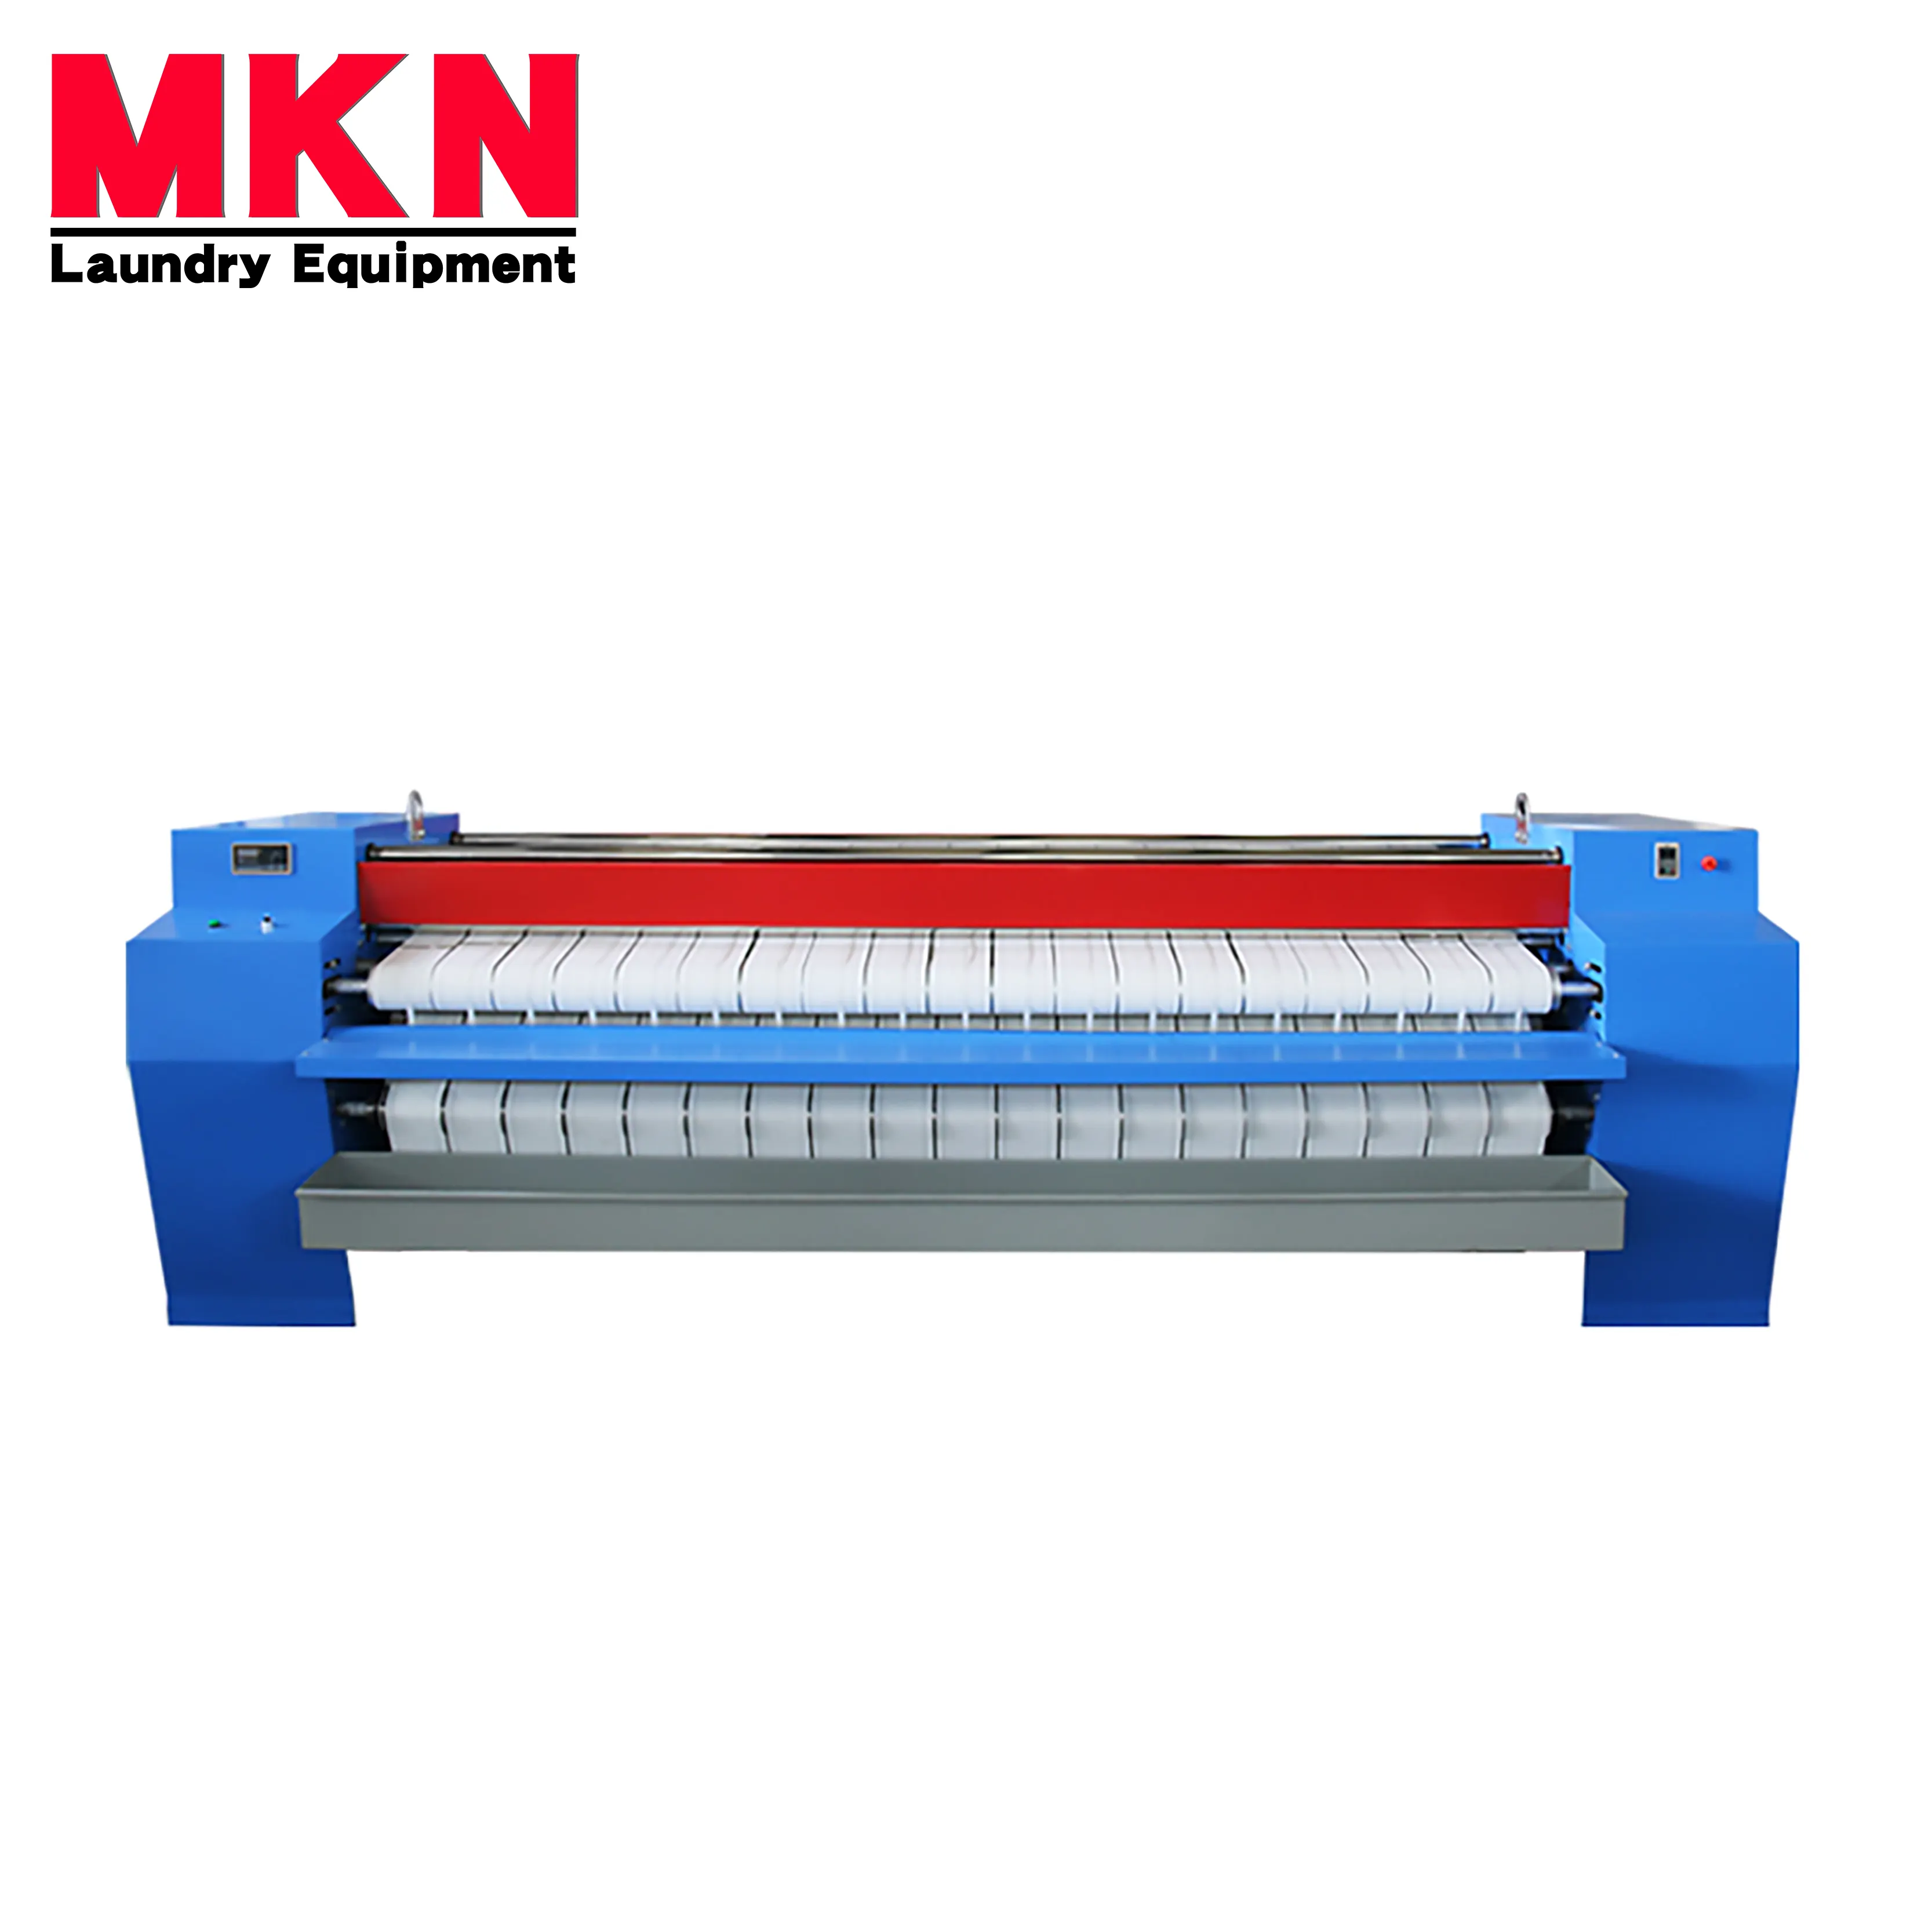 Фабричная поставка MKN, промышленное прачечное оборудование, полностью автоматическая гладильная машина для полотенец, одежды и простыней